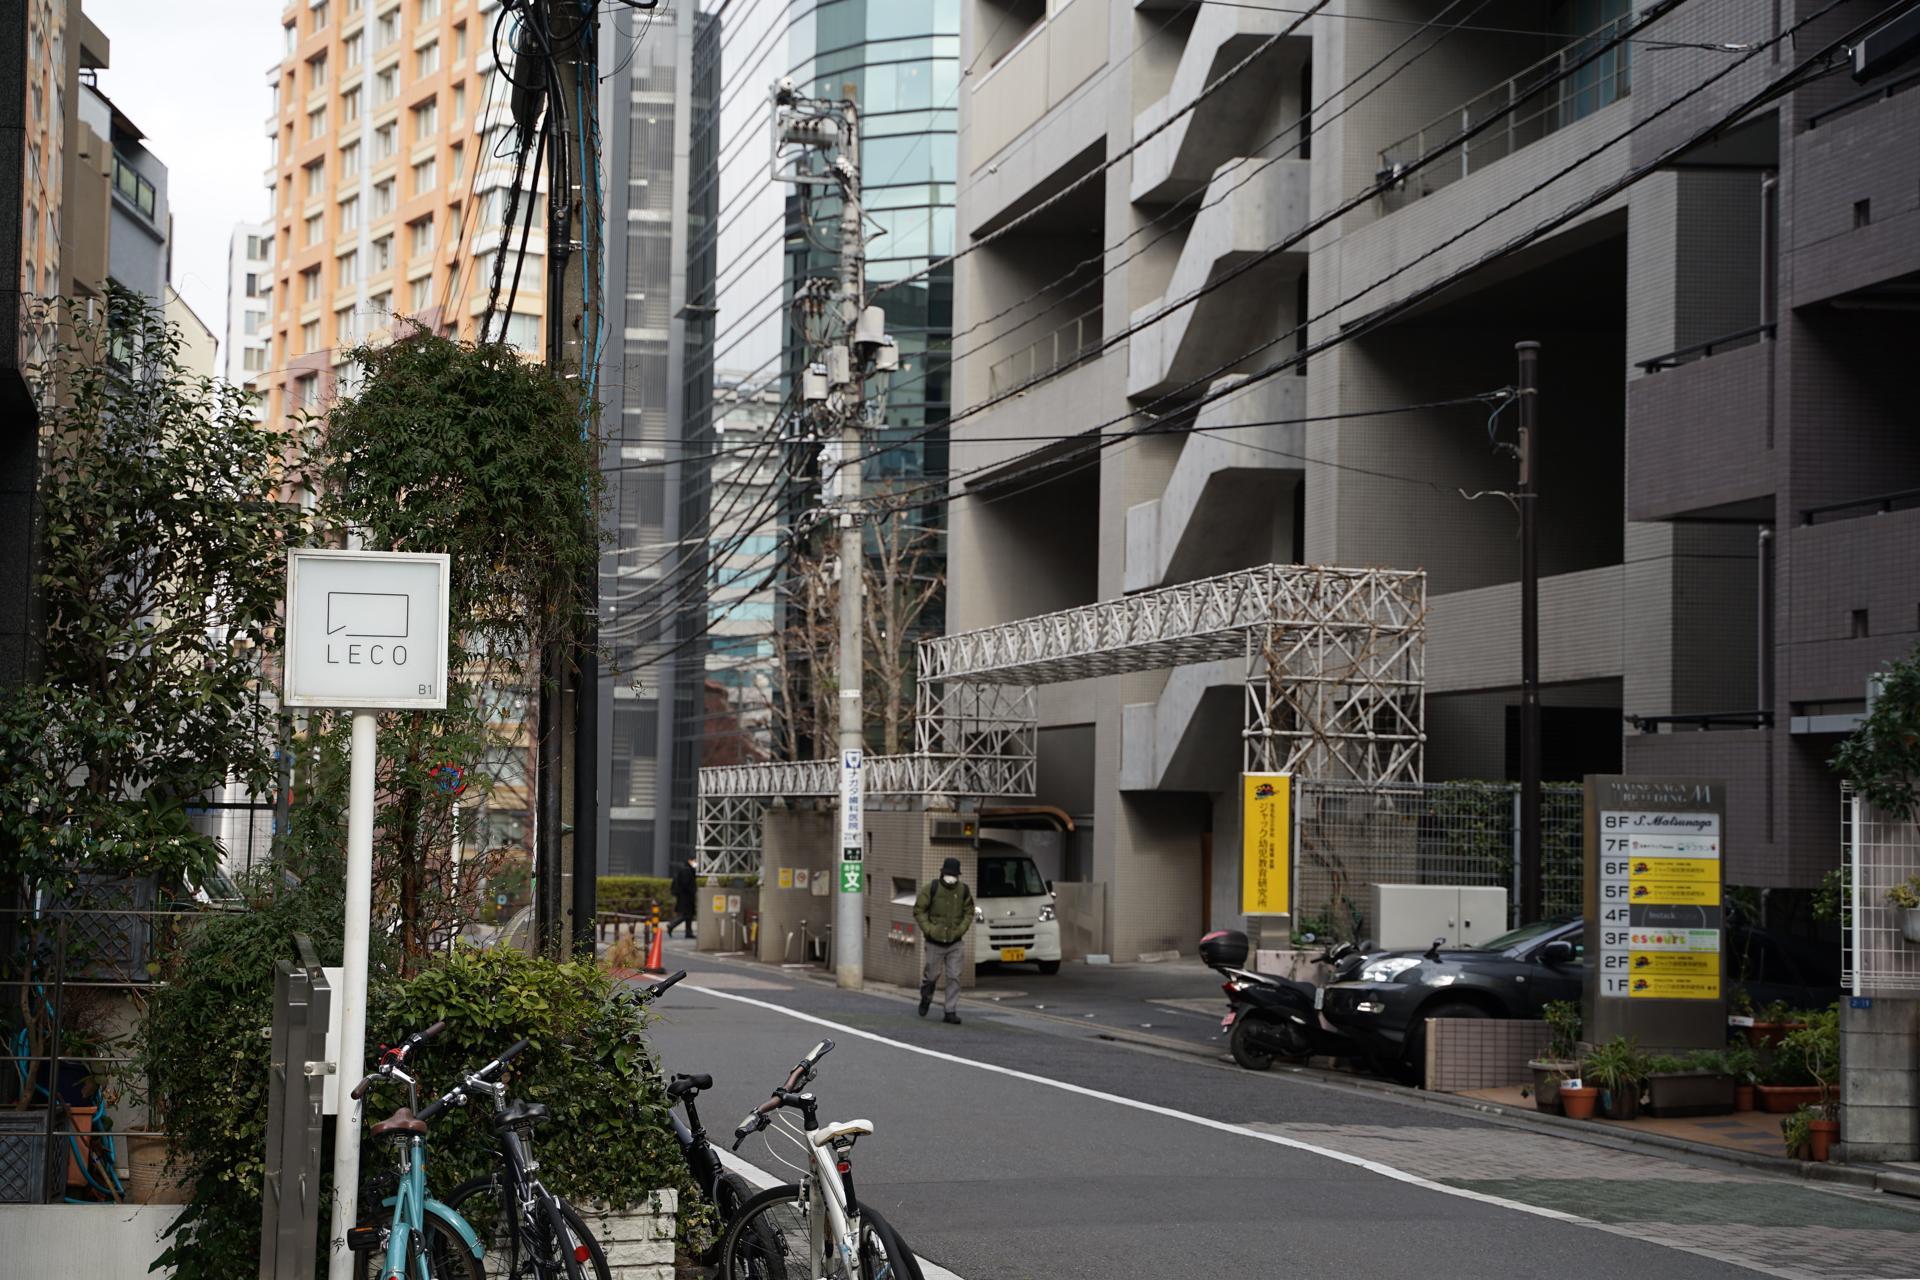 LECO看板と渋谷一丁目の風景